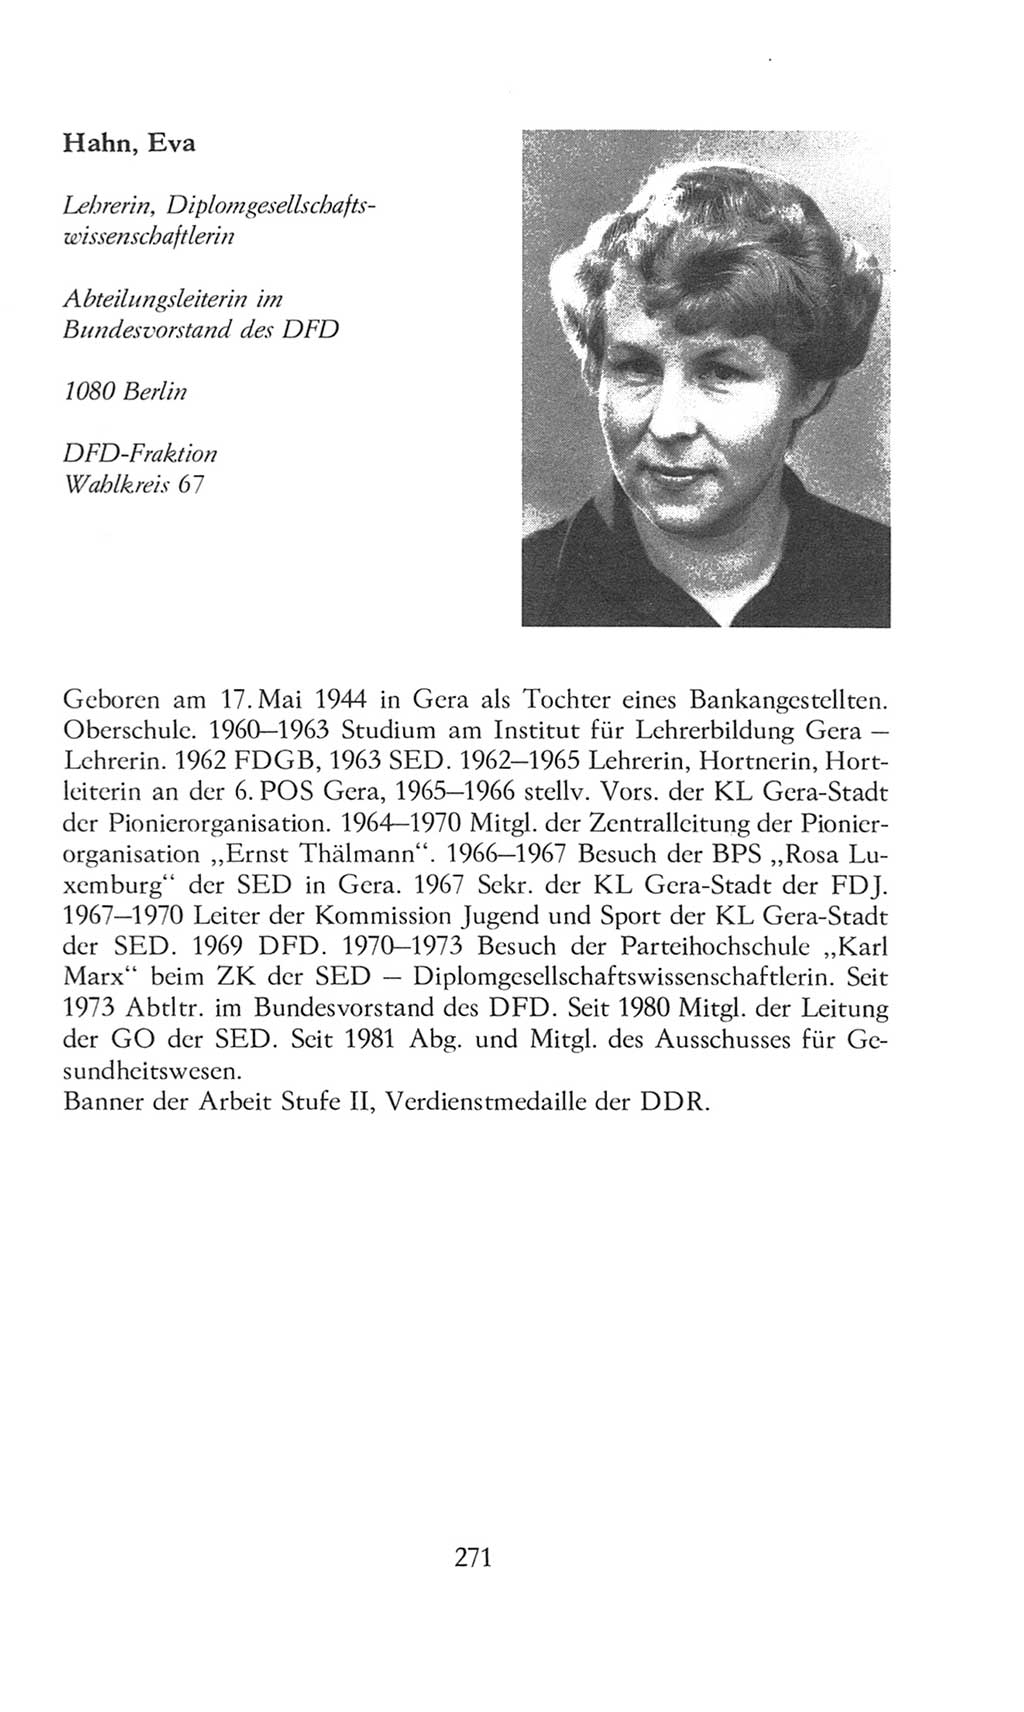 Volkskammer (VK) der Deutschen Demokratischen Republik (DDR), 8. Wahlperiode 1981-1986, Seite 271 (VK. DDR 8. WP. 1981-1986, S. 271)